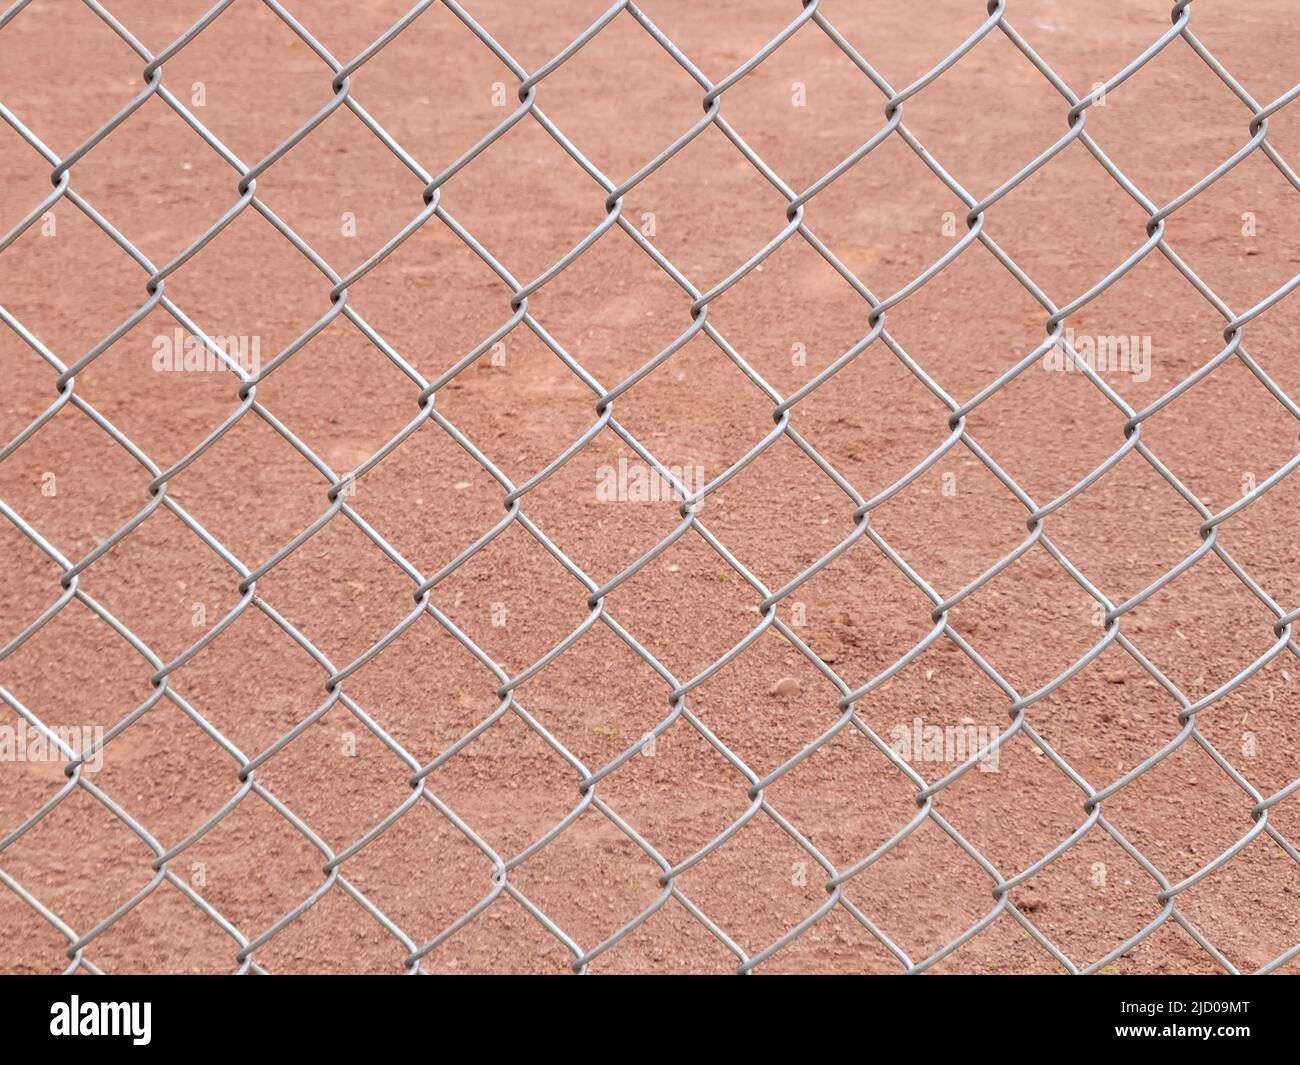 Primo piano di una recinzione con maglie a catena con fondo sporco marrone chiaro Foto Stock